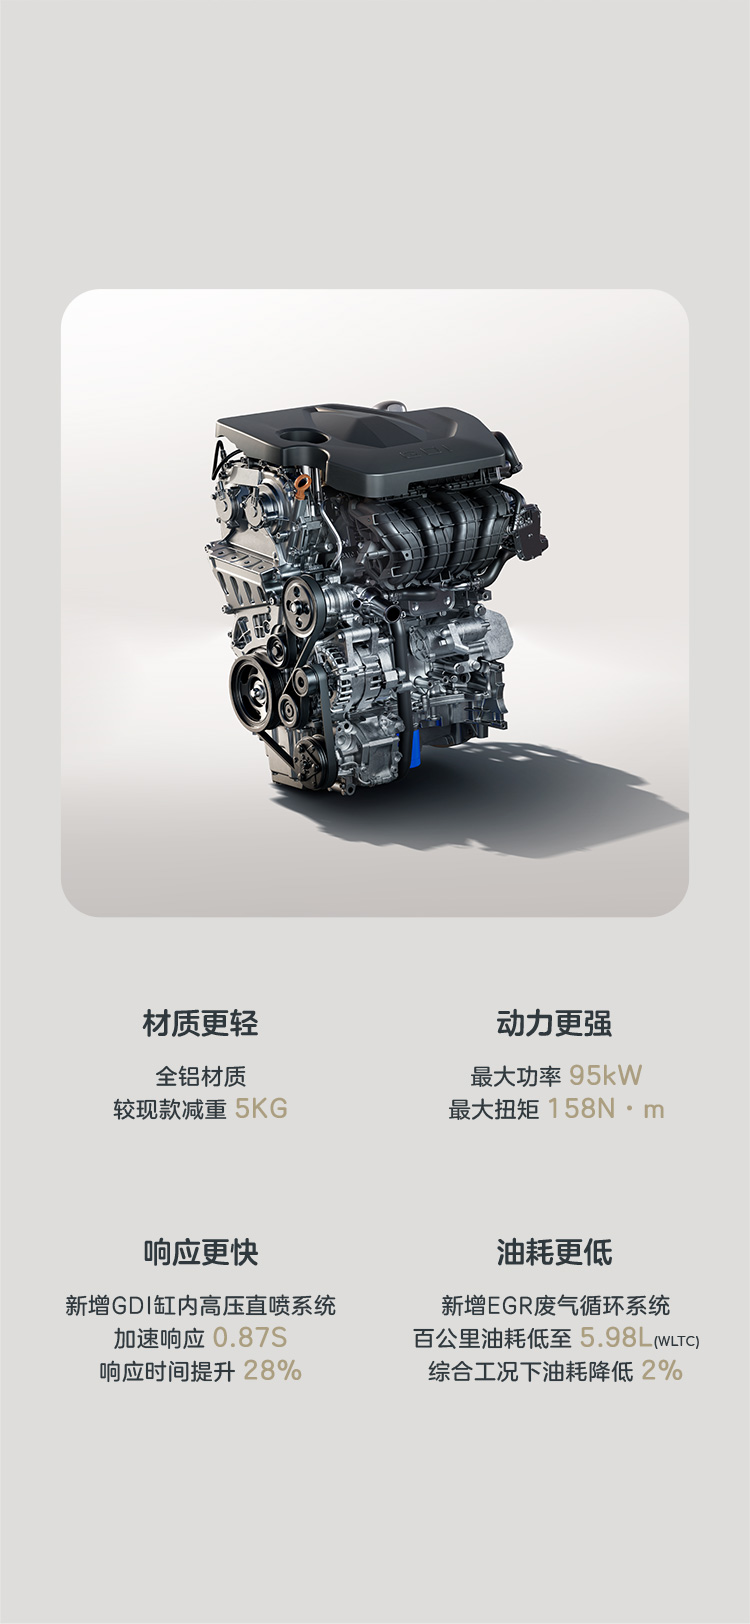 全新 1.5L GDI缸内高压直喷全铝发动机